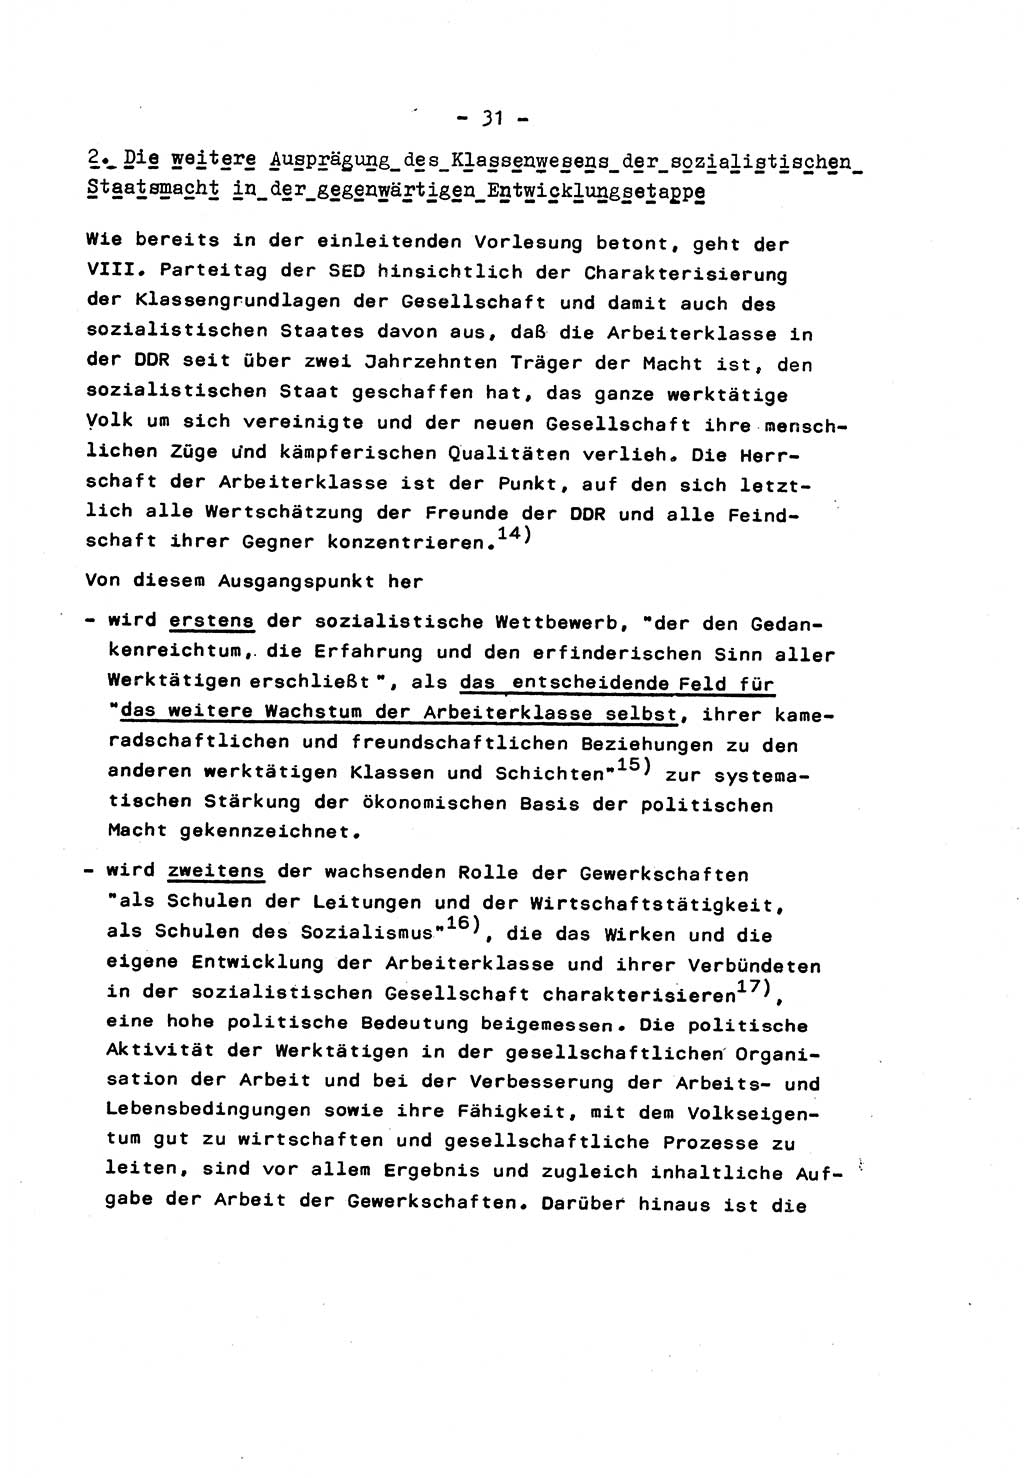 Marxistisch-leninistische Staats- und Rechtstheorie [Deutsche Demokratische Republik (DDR)] 1975, Seite 31 (ML St.-R.-Th. DDR 1975, S. 31)